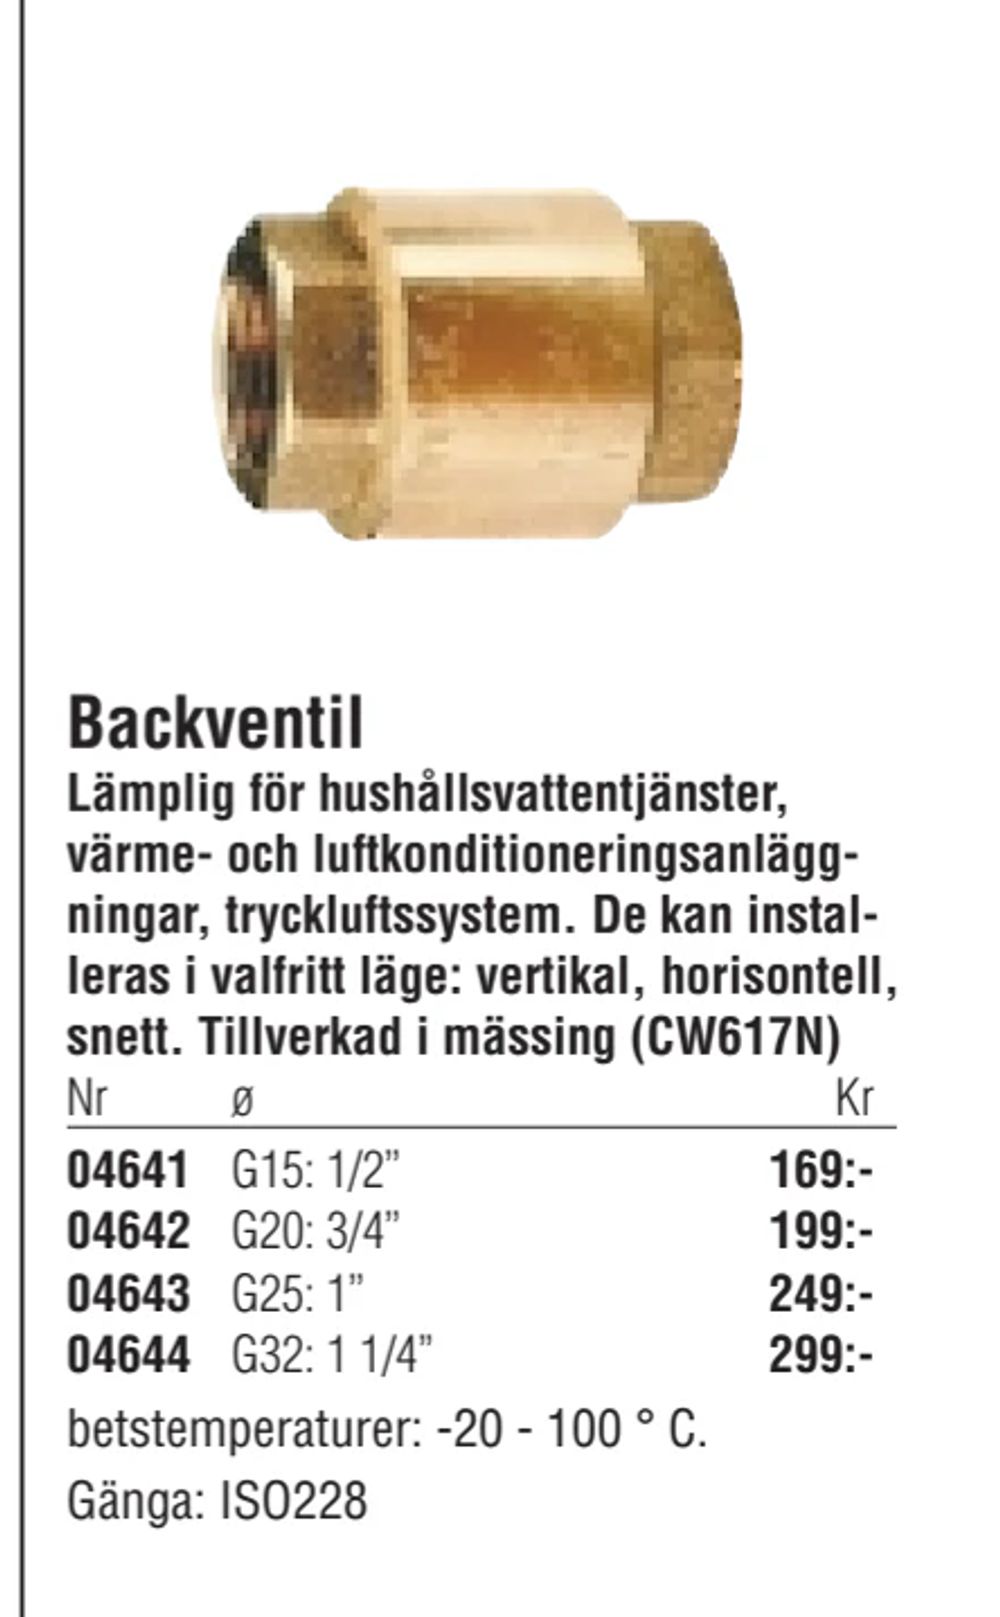 Erbjudanden på Backventil från Erlandsons Brygga för 169 kr